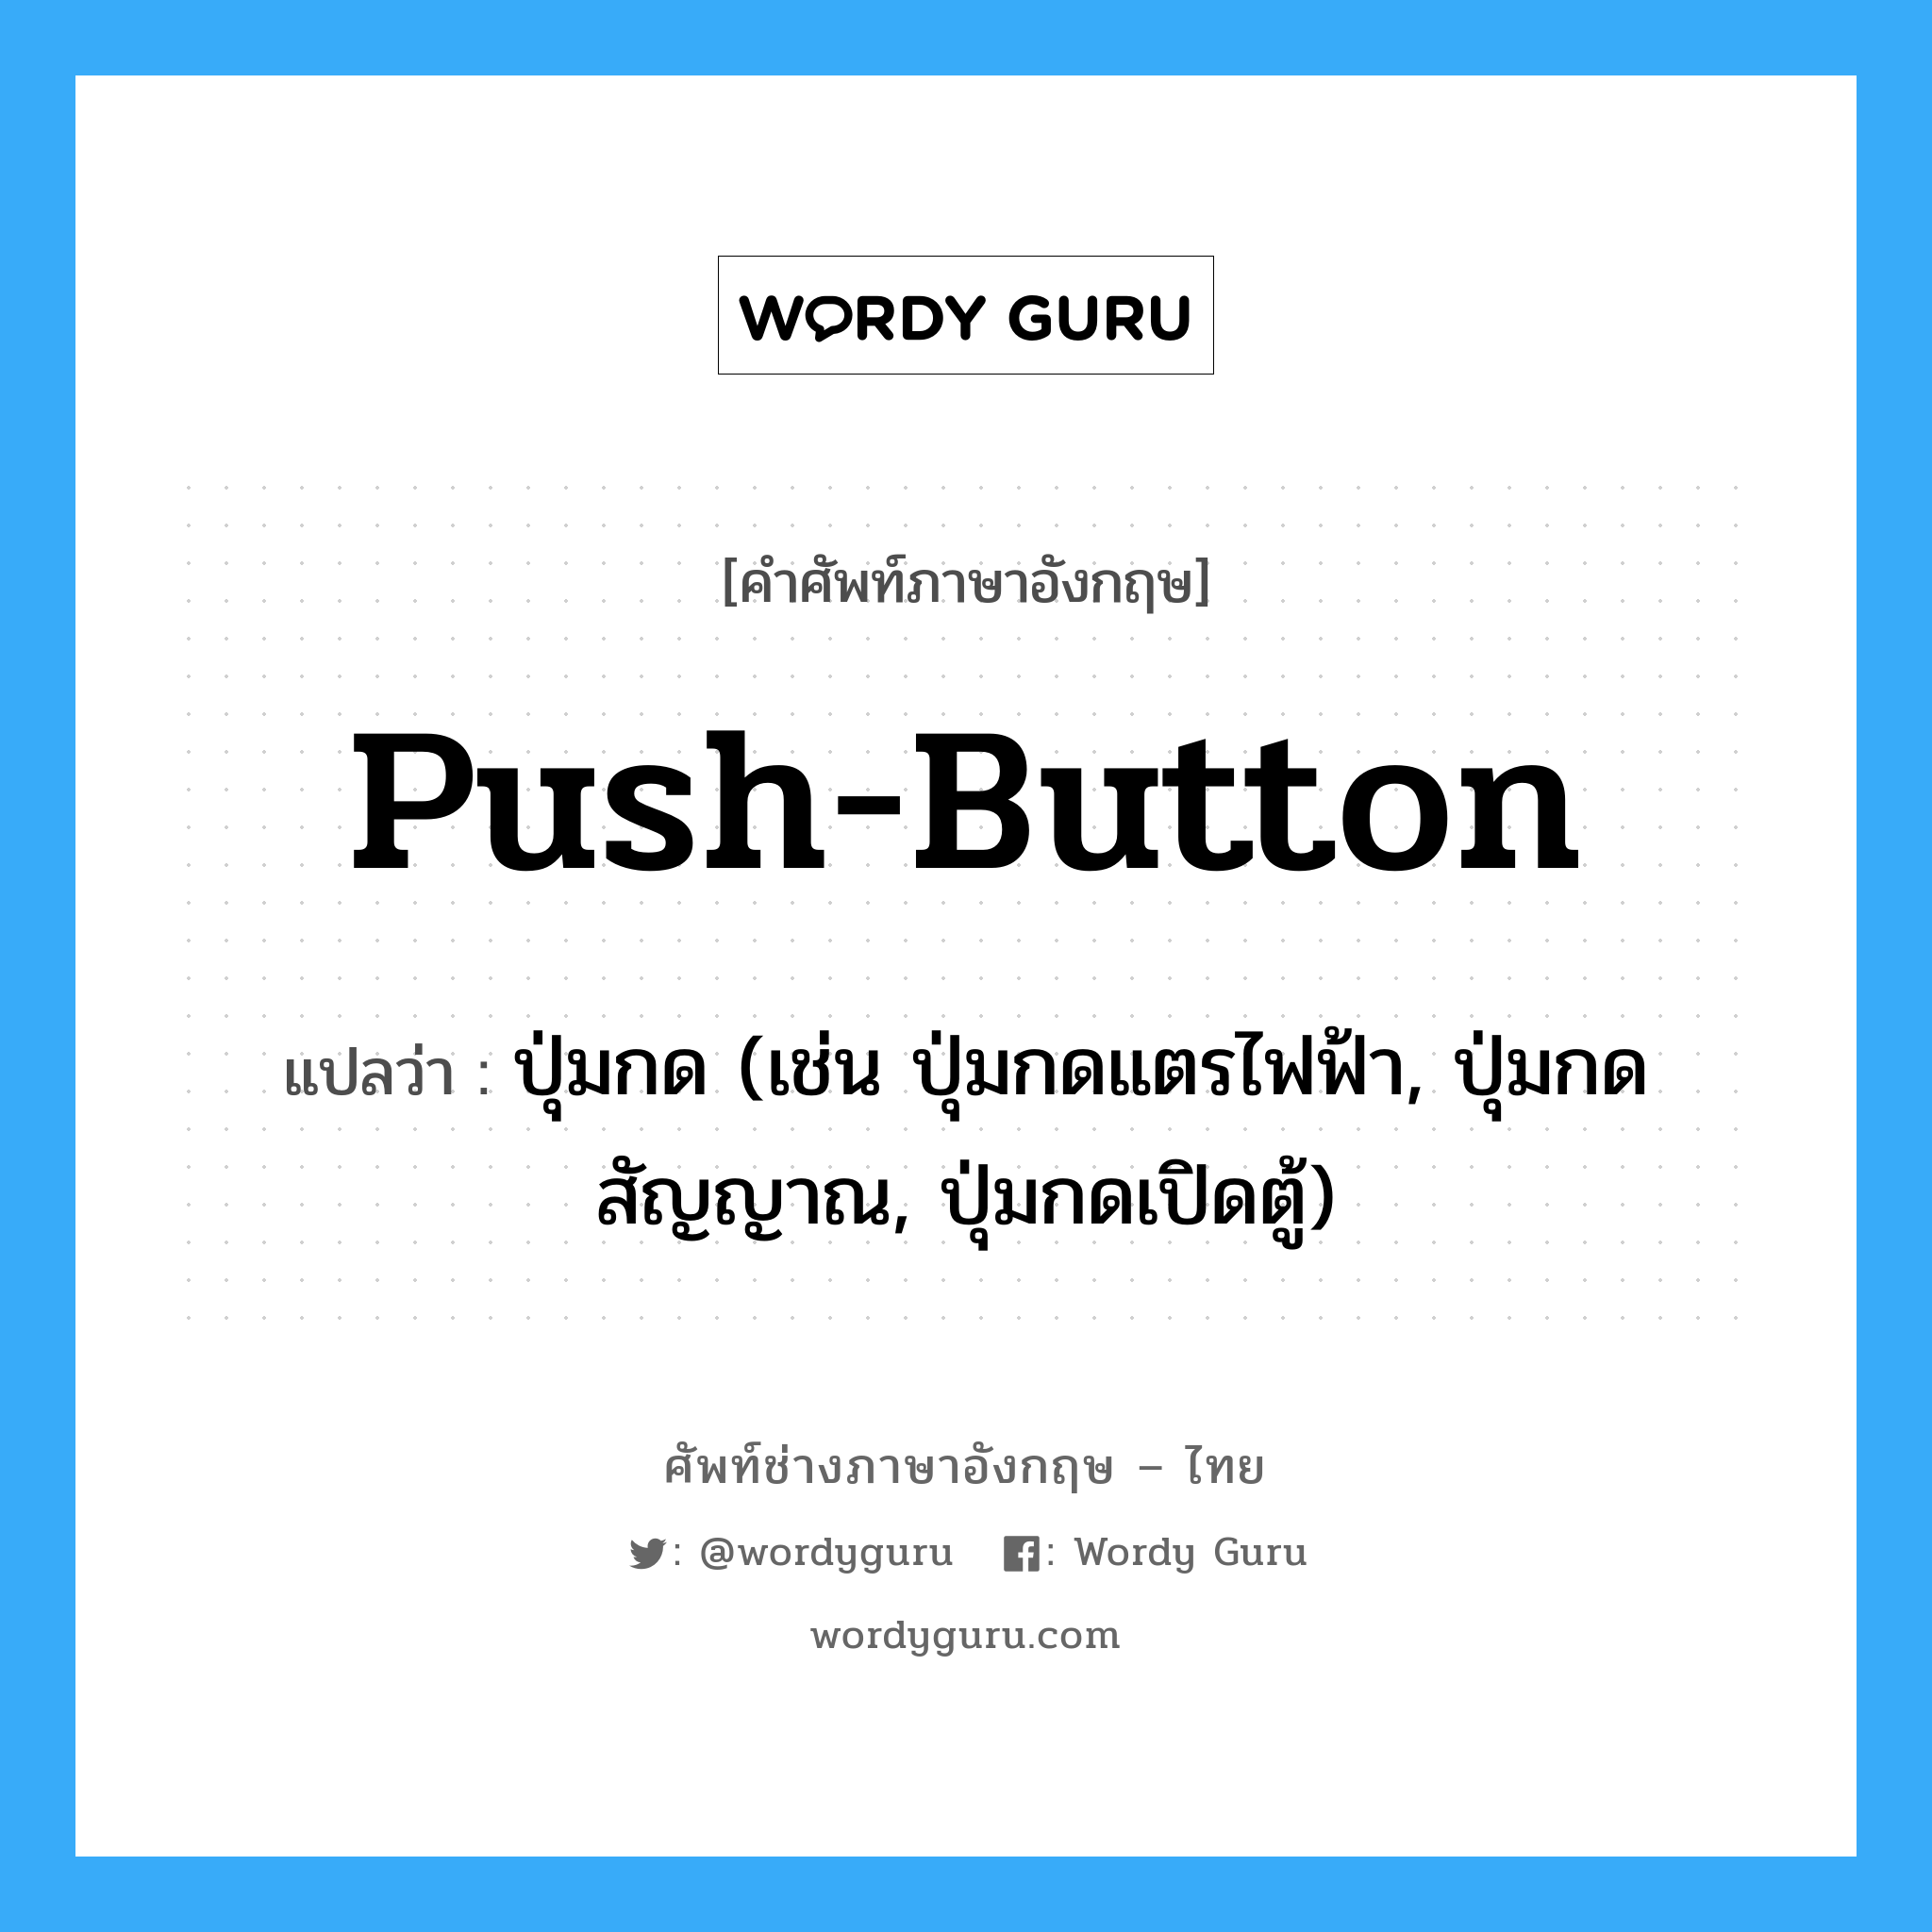 push-button แปลว่า?, คำศัพท์ช่างภาษาอังกฤษ - ไทย push-button คำศัพท์ภาษาอังกฤษ push-button แปลว่า ปุ่มกด (เช่น ปุ่มกดแตรไฟฟ้า, ปุ่มกดสัญญาณ, ปุ่มกดเปิดตู้)